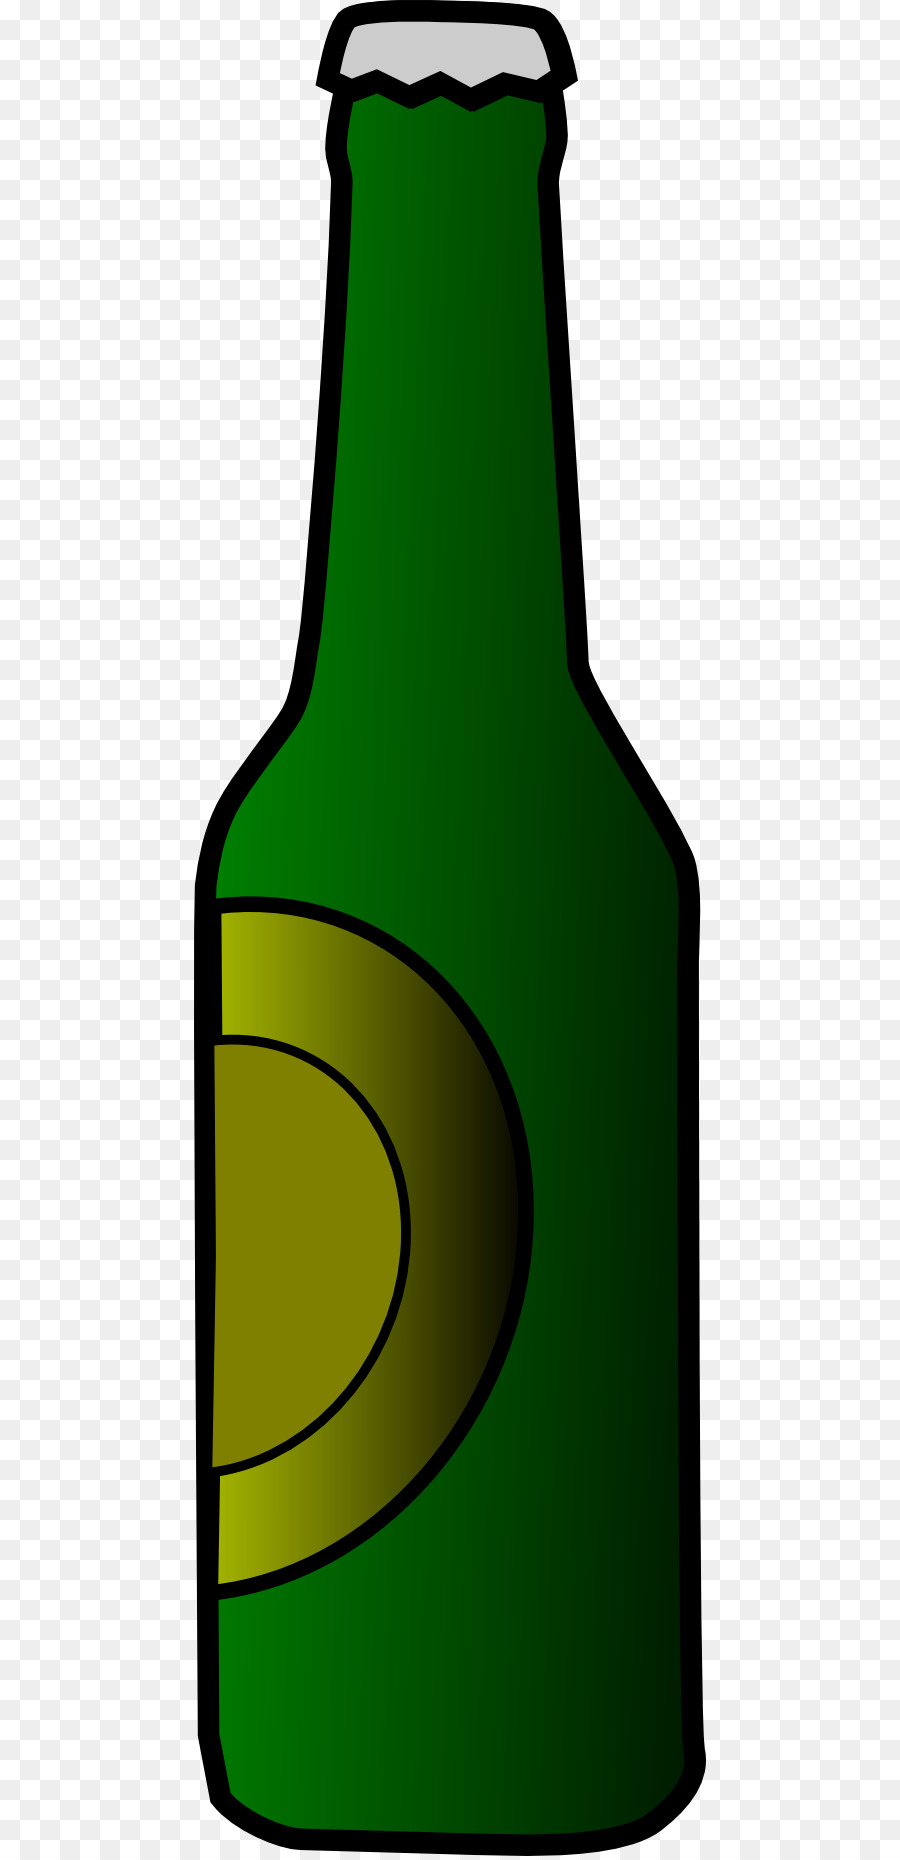 Bottiglia di birra e Bottiglie di Acqua Clip art - bottiglia di liquore clipart